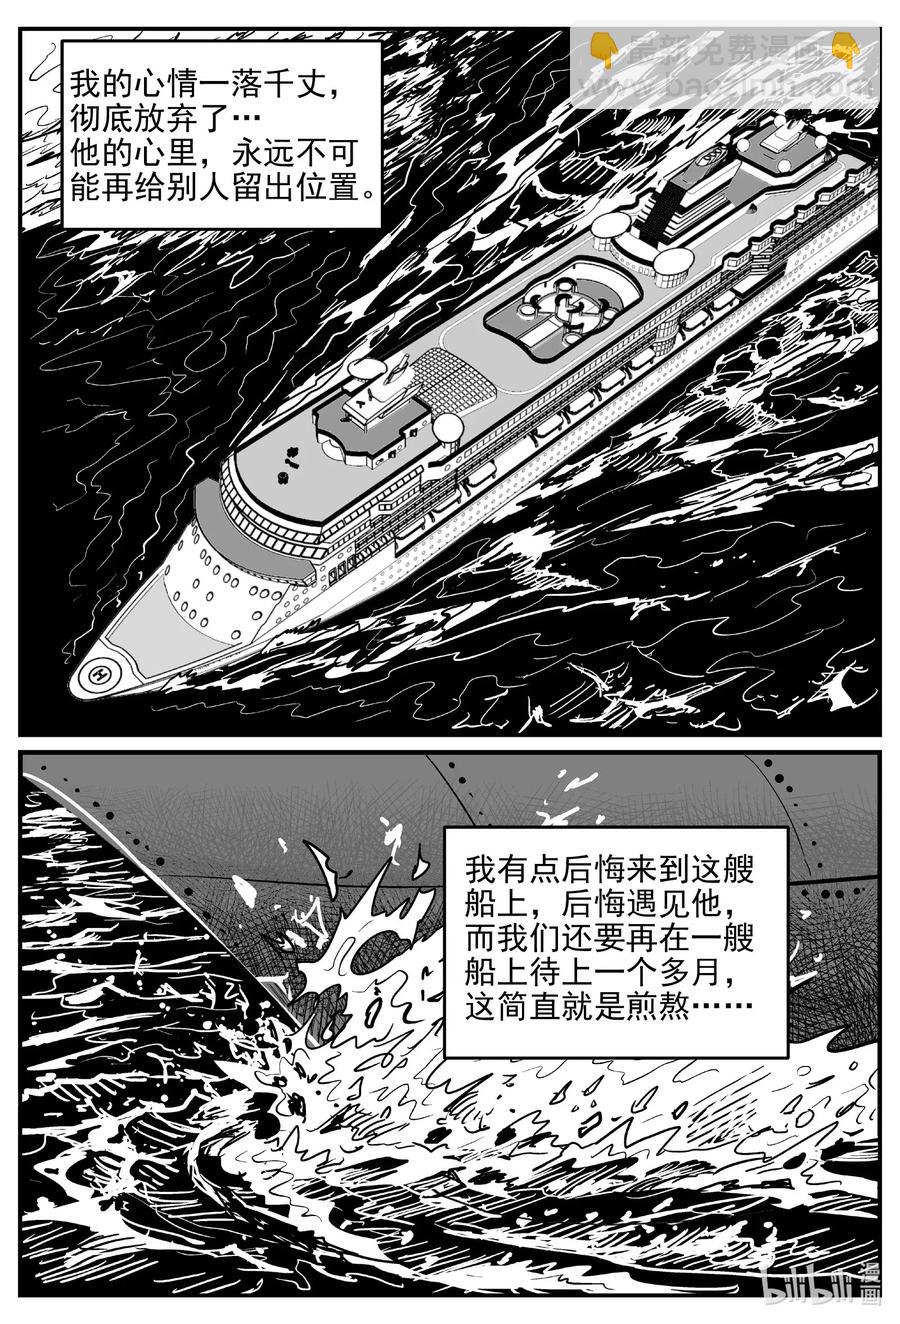 小智怪談 - 519 幽靈船 - 1